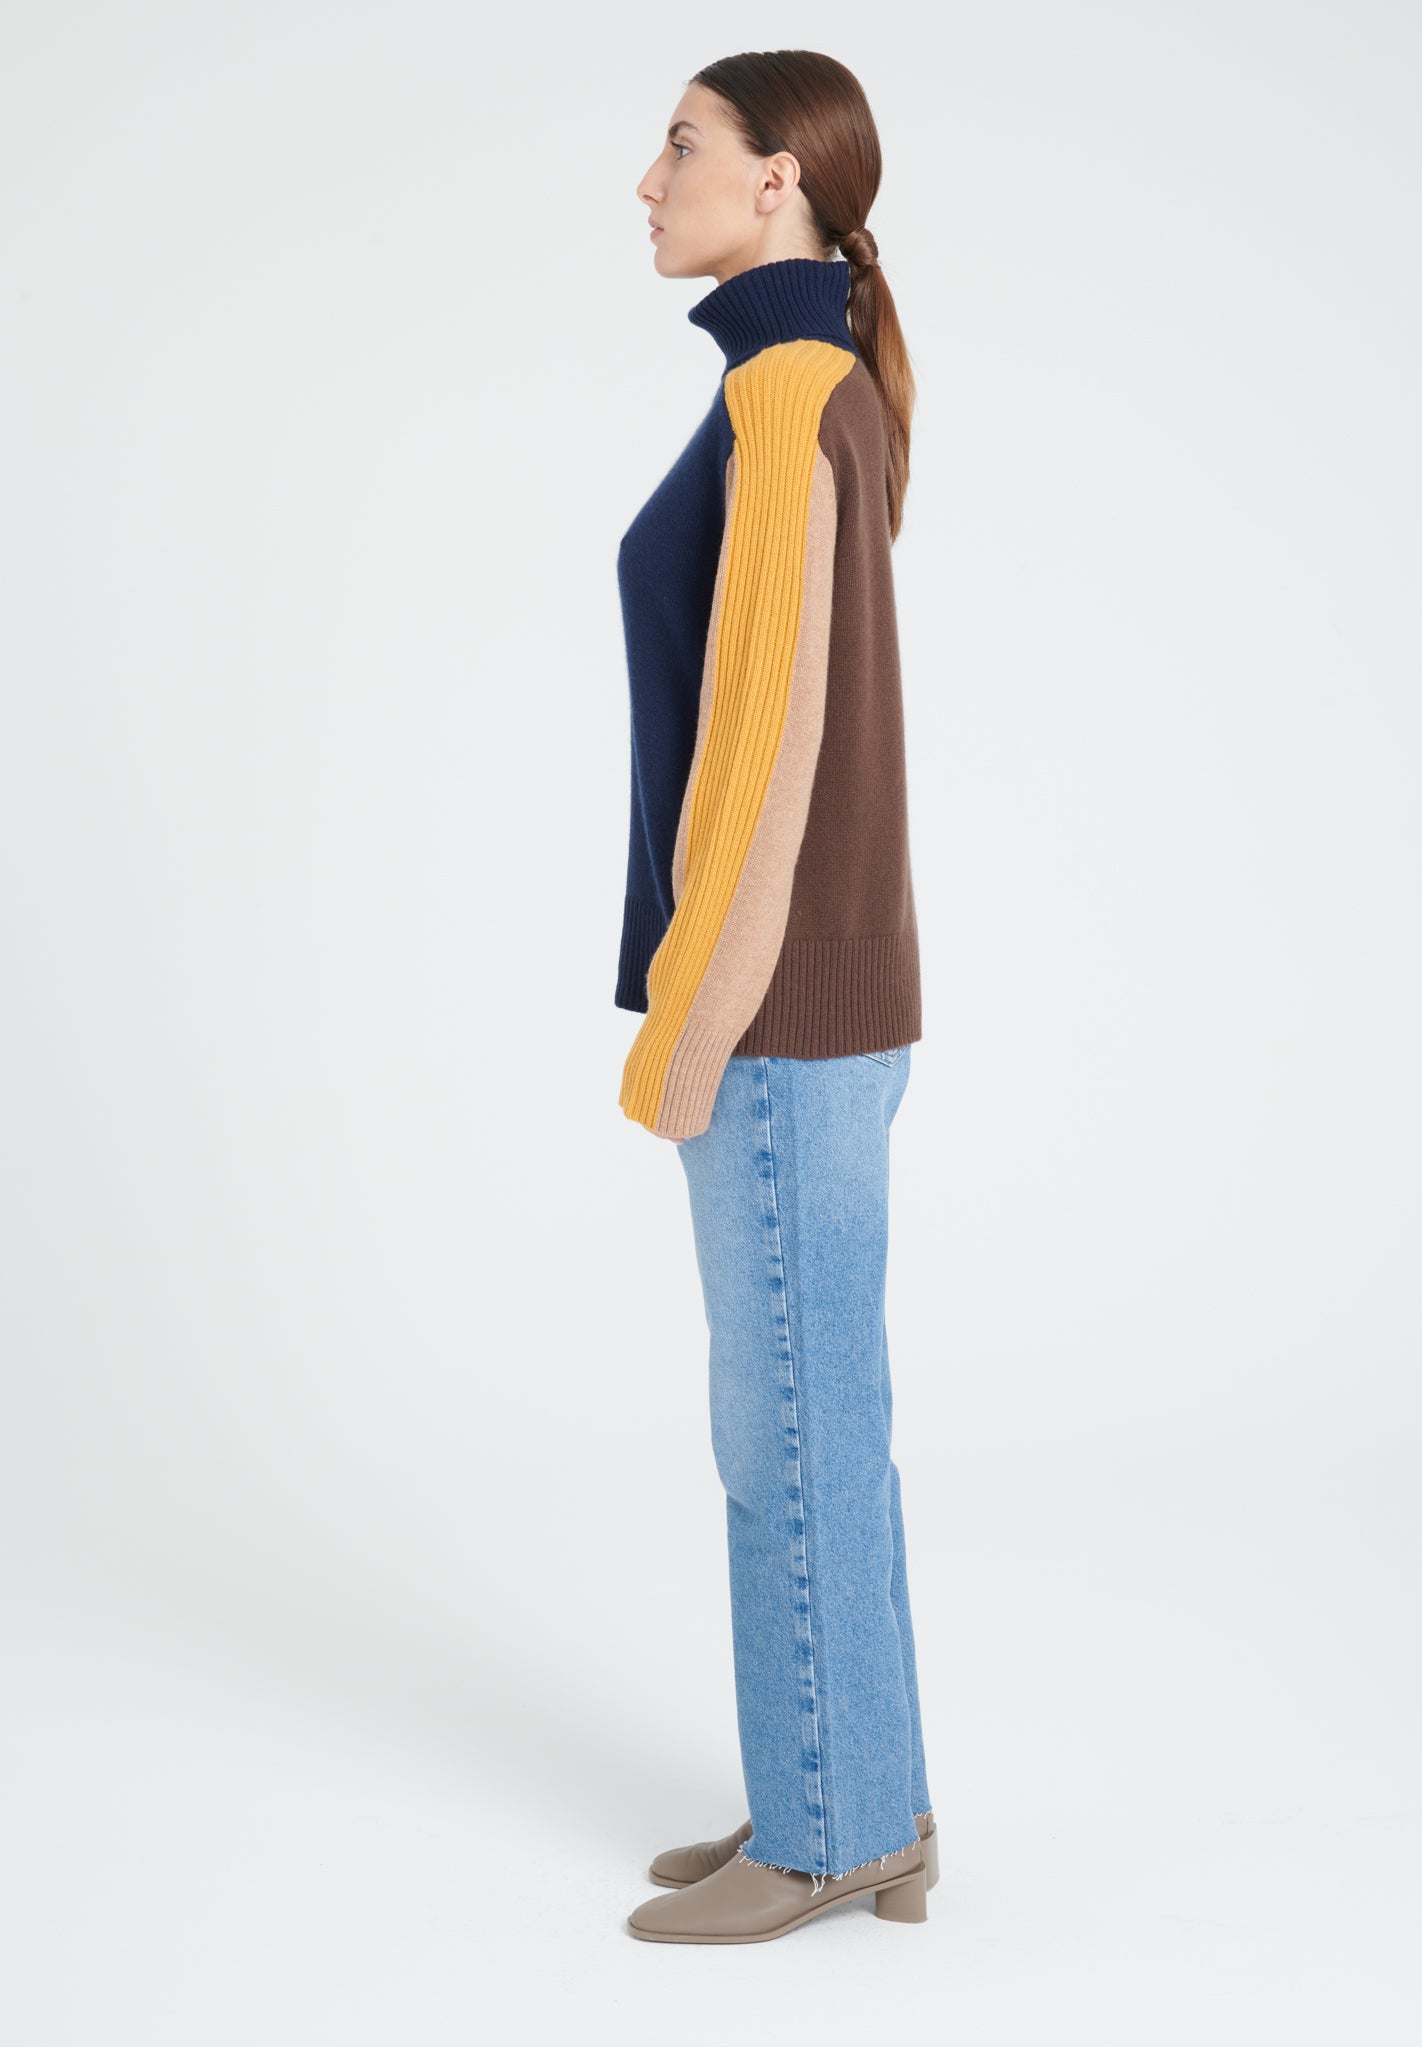 ZAYA 12 Multi-color 4-thread cashmere color block turtleneck sweater